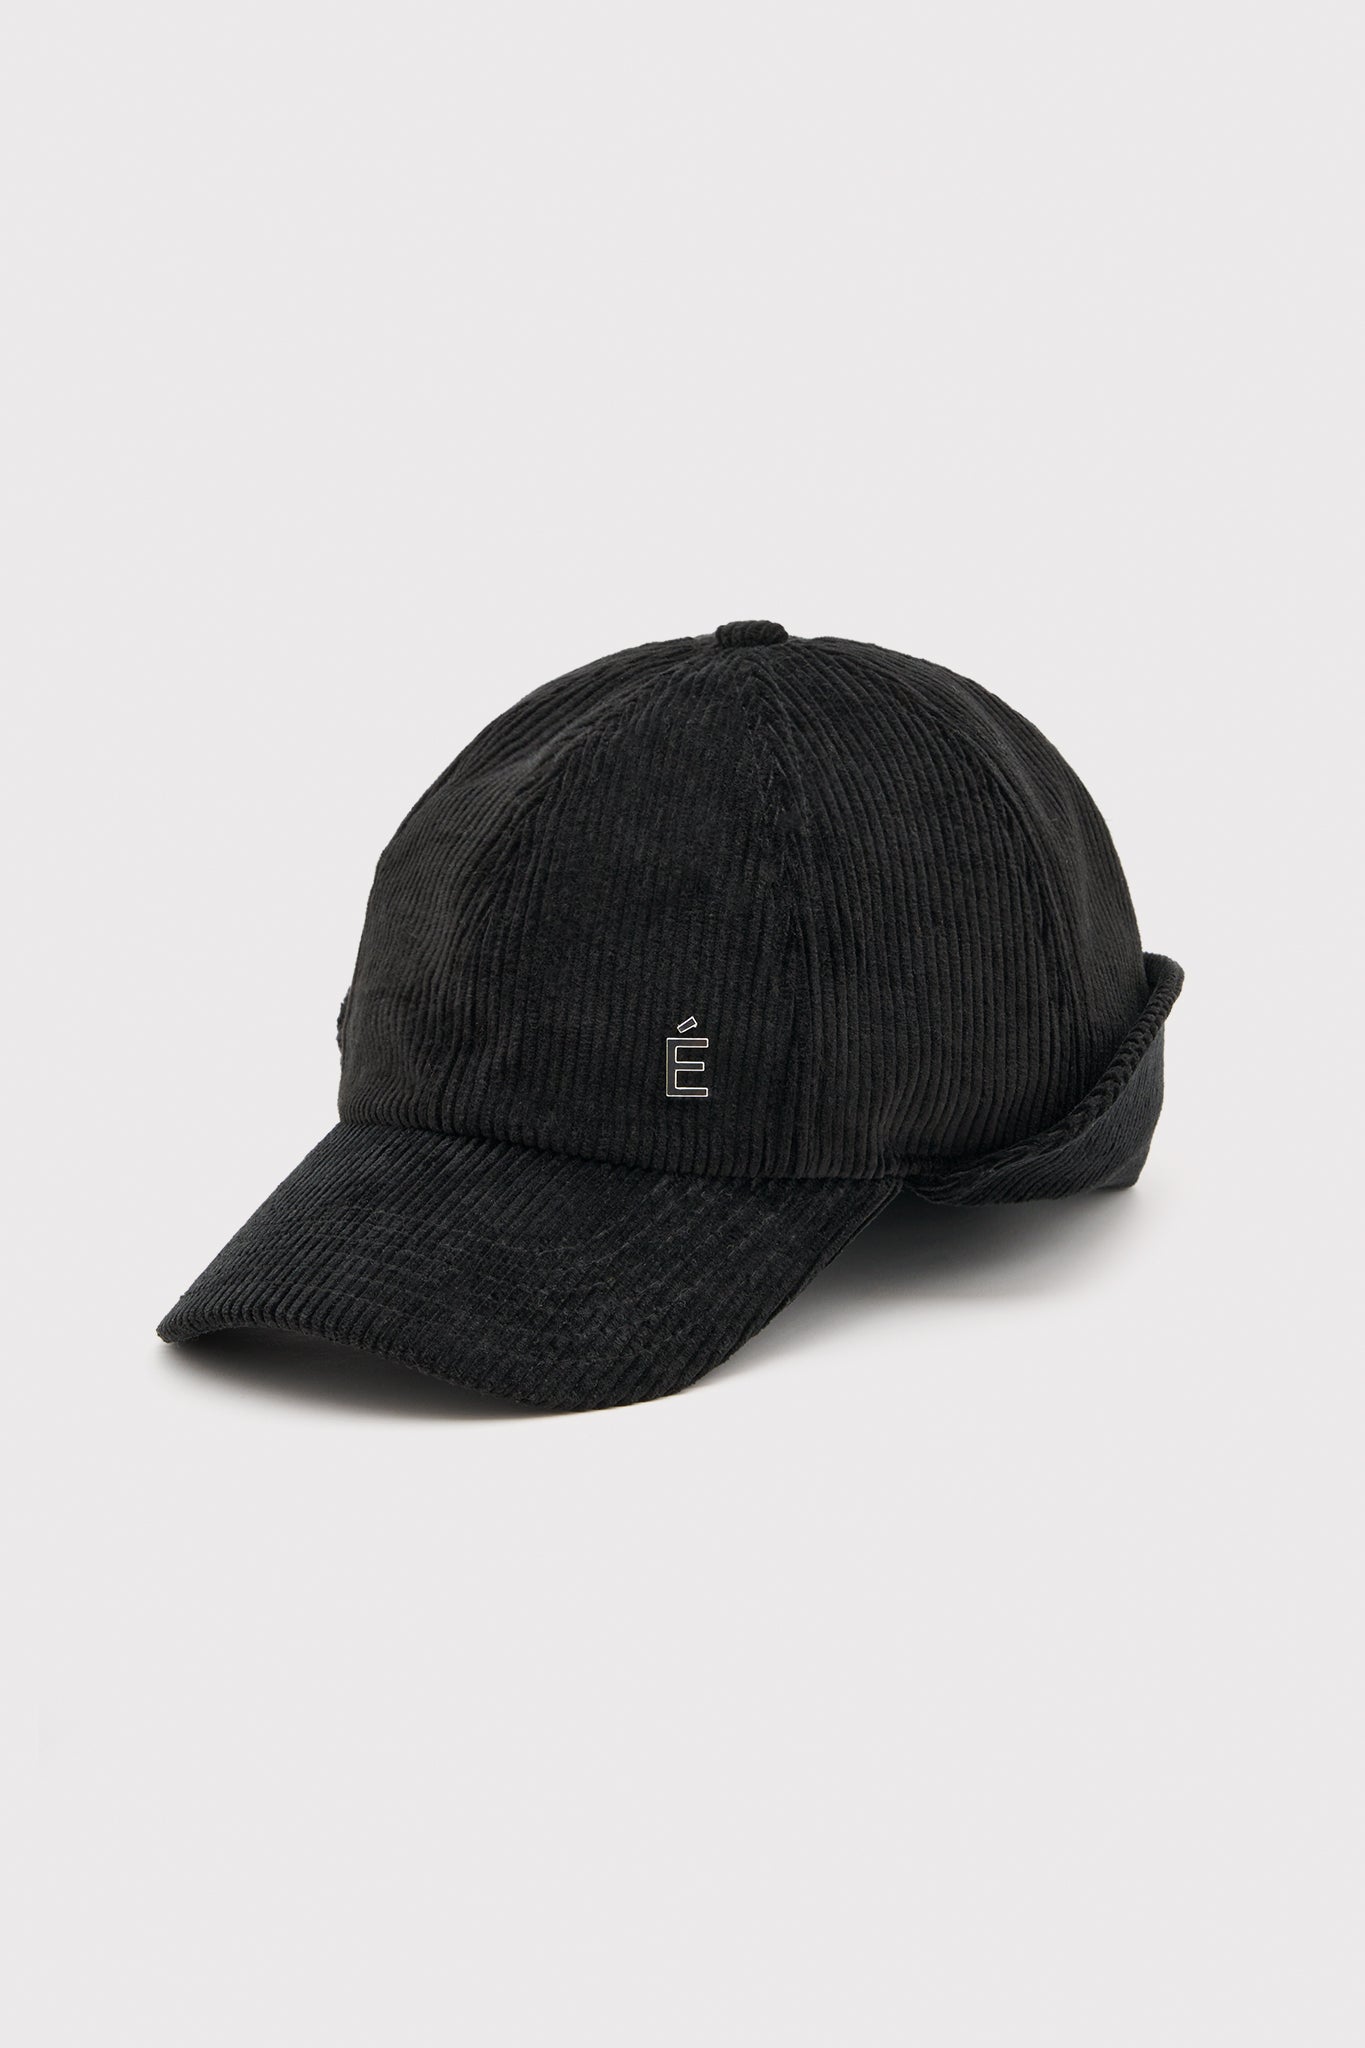 ÉTUDES FLAPCAP CORDUROY BLACK HATS 1